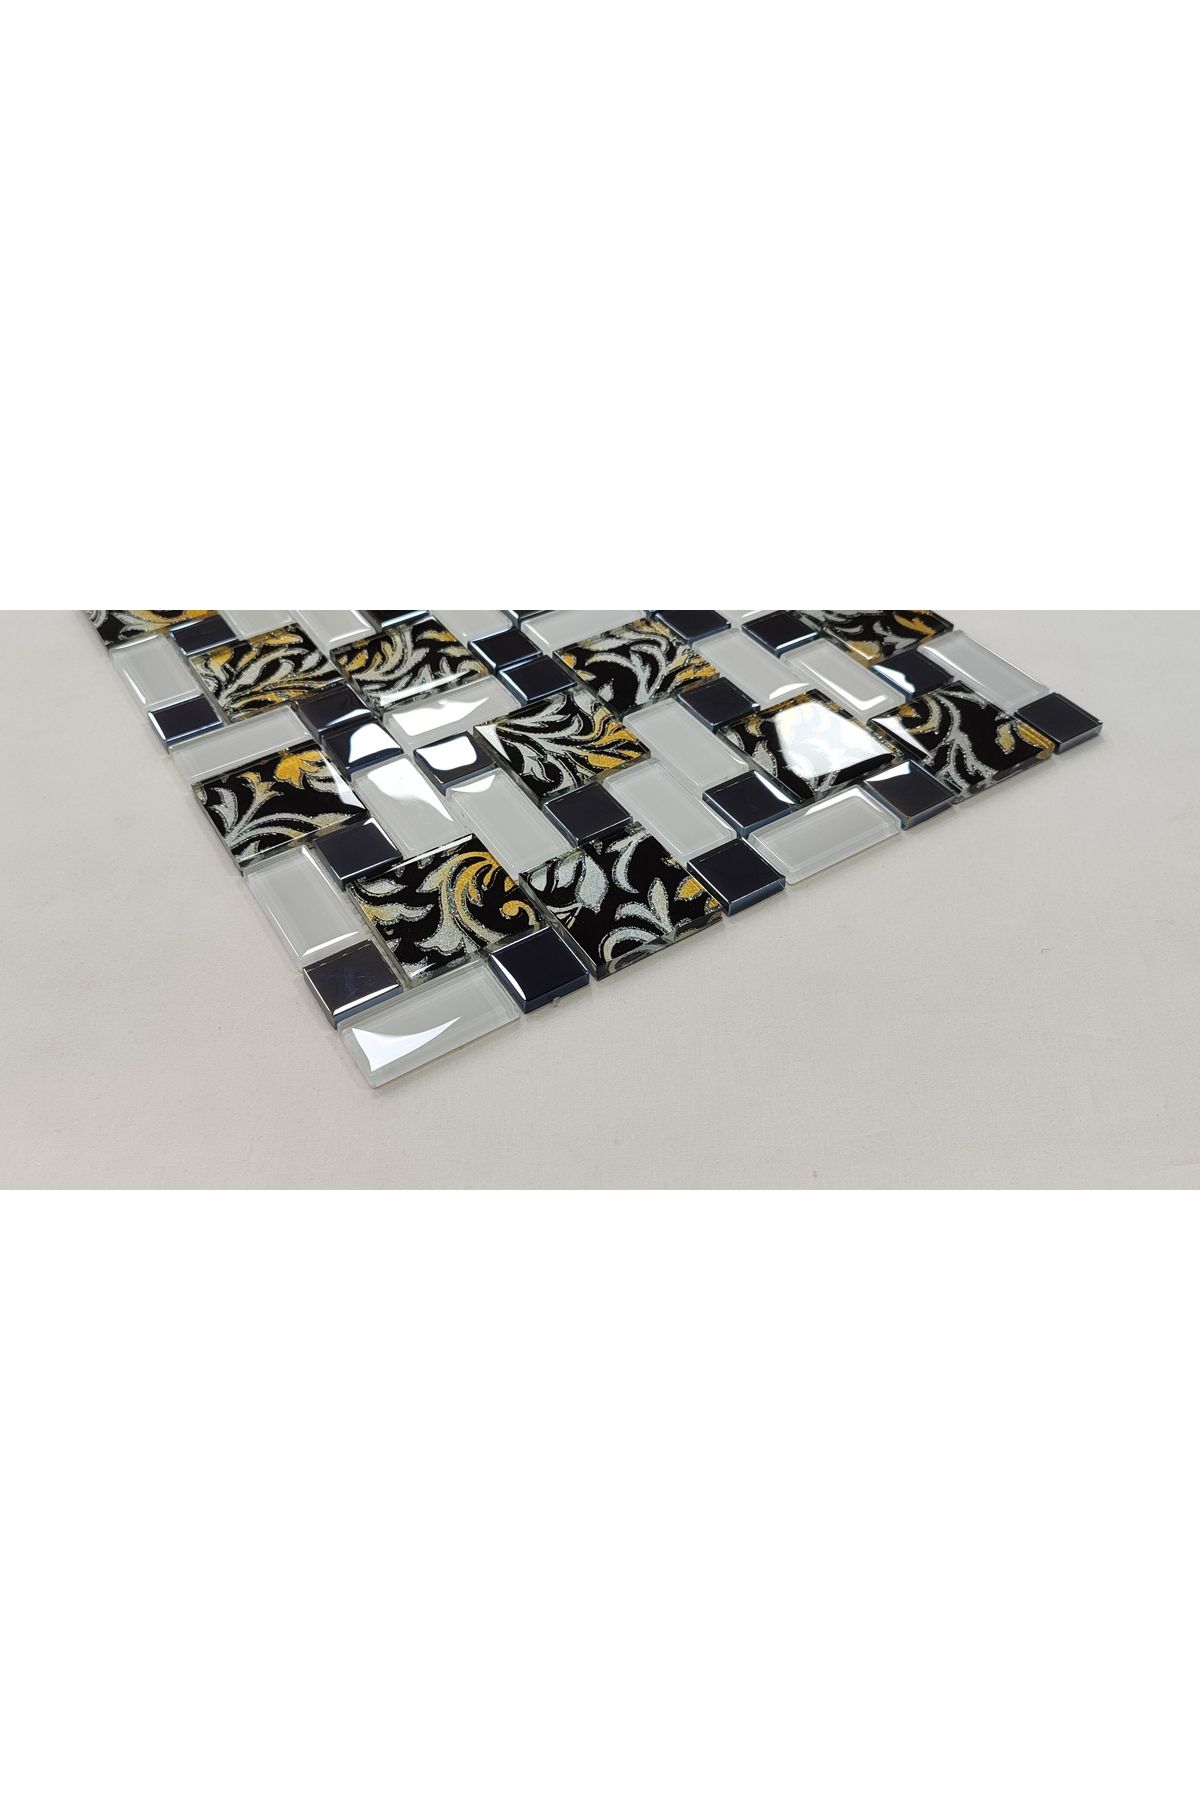 MozaiKristaL Mutfak Tezgah Arası Ve Iç Dekorasyon Için Mix Kristal Cam Mozaik. ( 1 M2 Fiyatıdır )